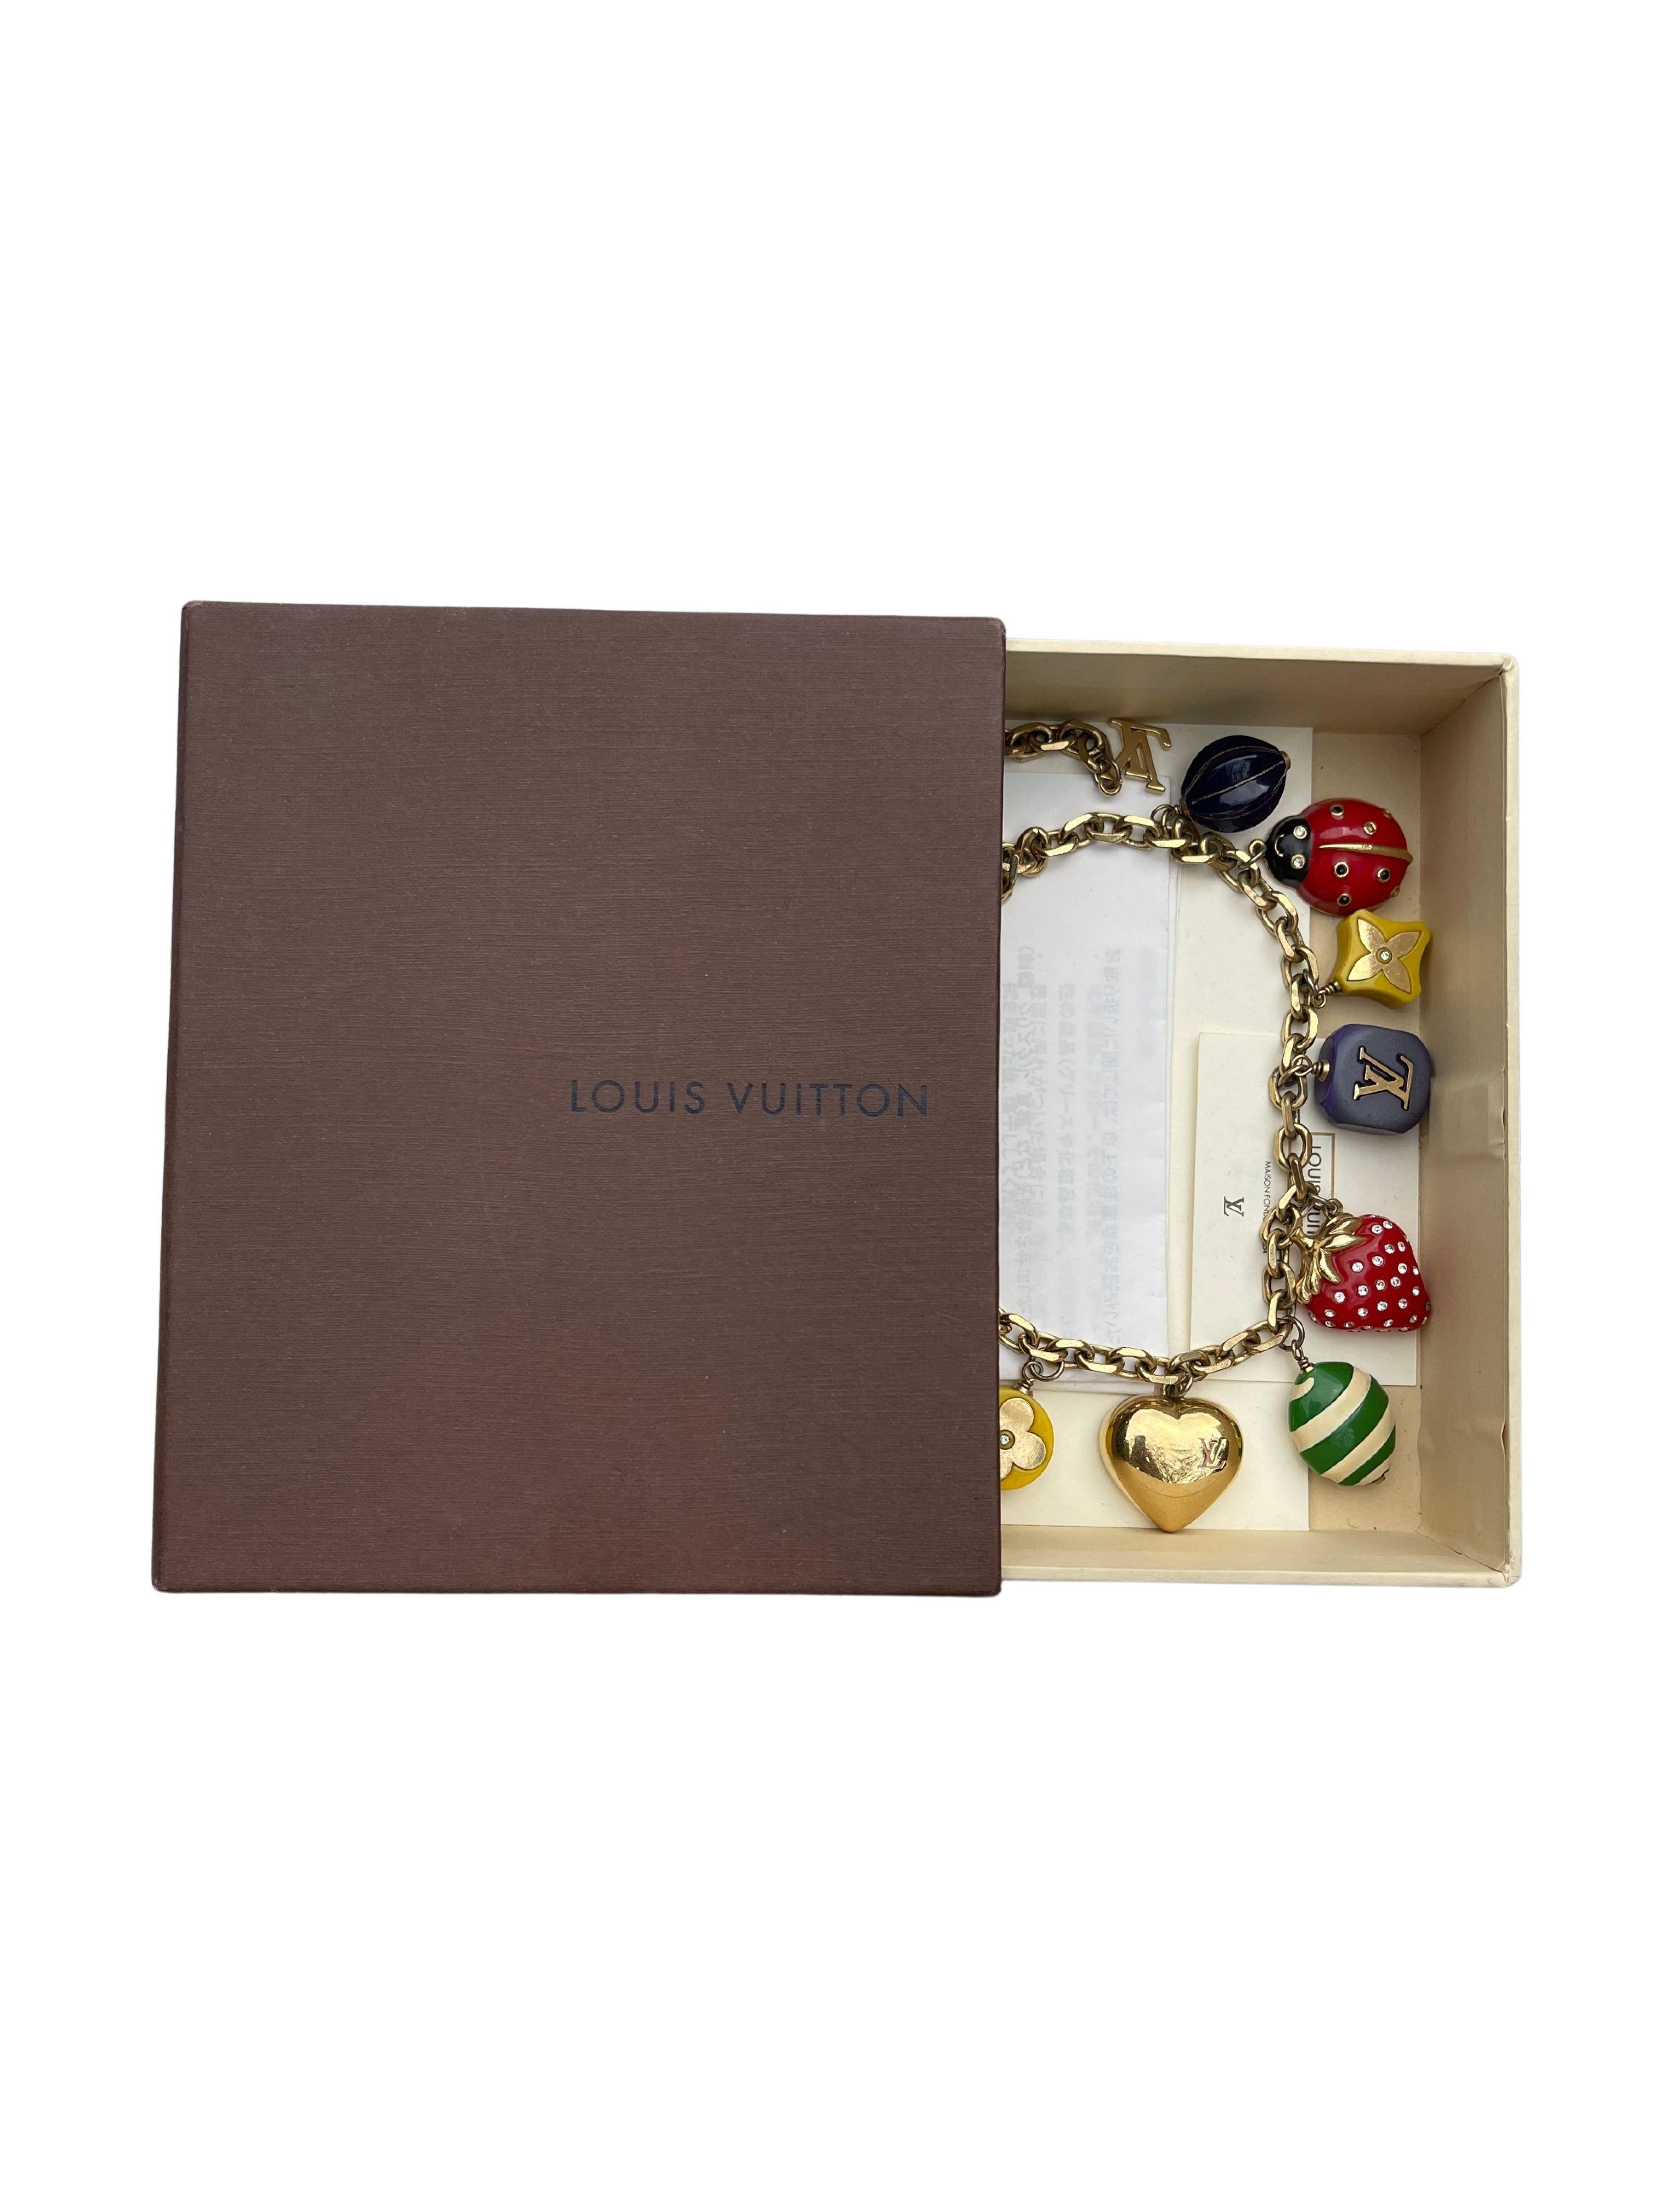 Datum unbekannt, Louis Vuitton mehrfarbige Logo-Charms mit weißen Kristallen und vergoldeter Halskette.

Größe: OS, einstellbar

Zustand: Leicht gebraucht, kommt mit Originalverpackung und Quittung 